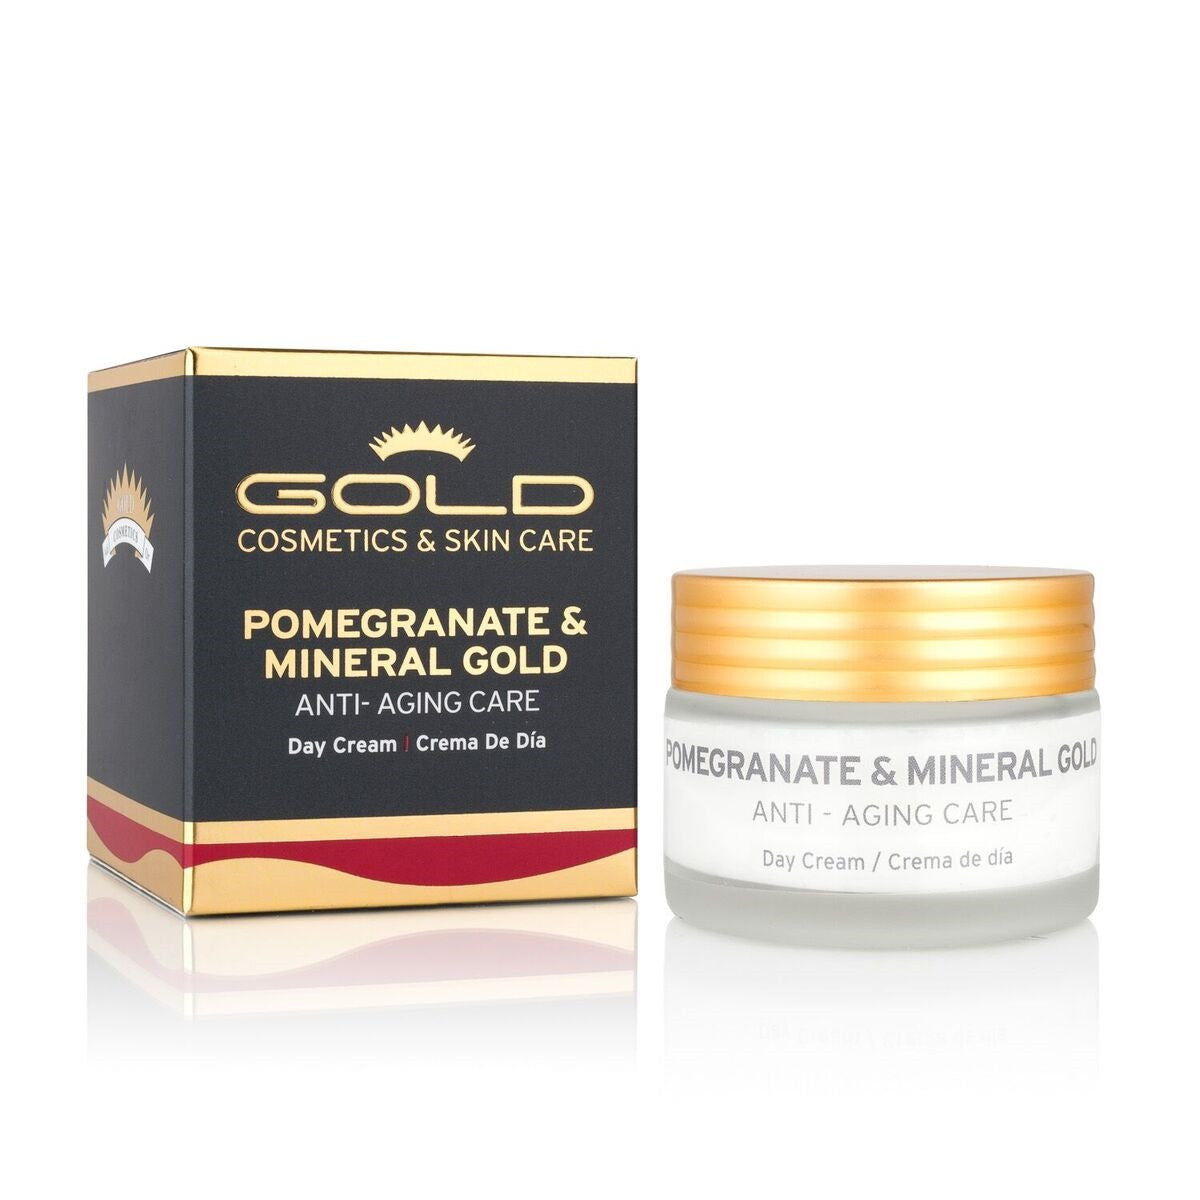 Pomegranate & Mineral Gold Day Cream - Gold Cosmetics & Skin Care